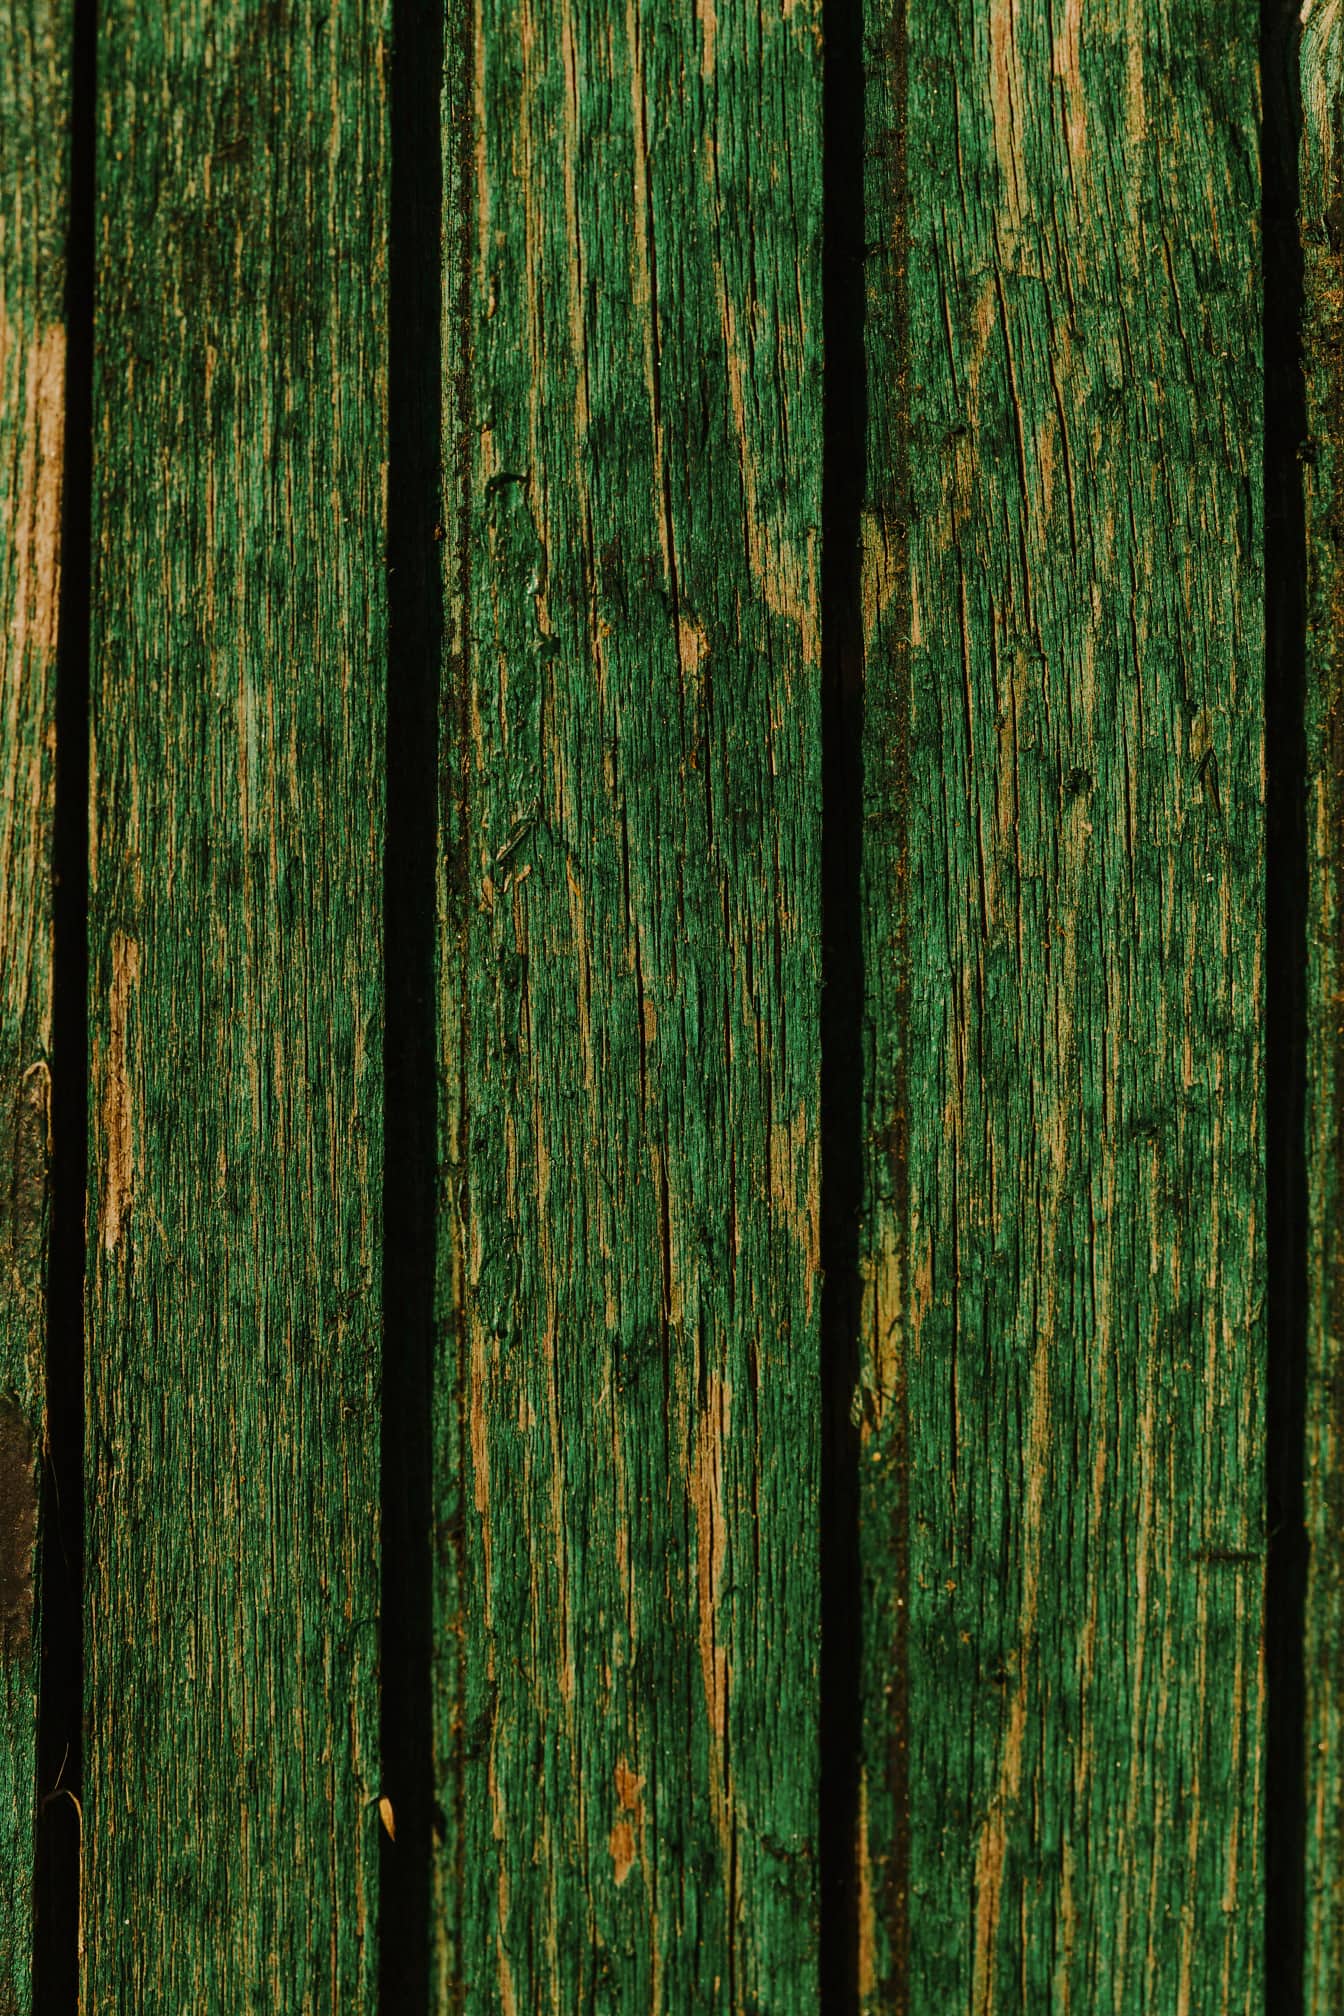 오래 된 수직 나무 판자 질감에 짙은 녹색 페인트